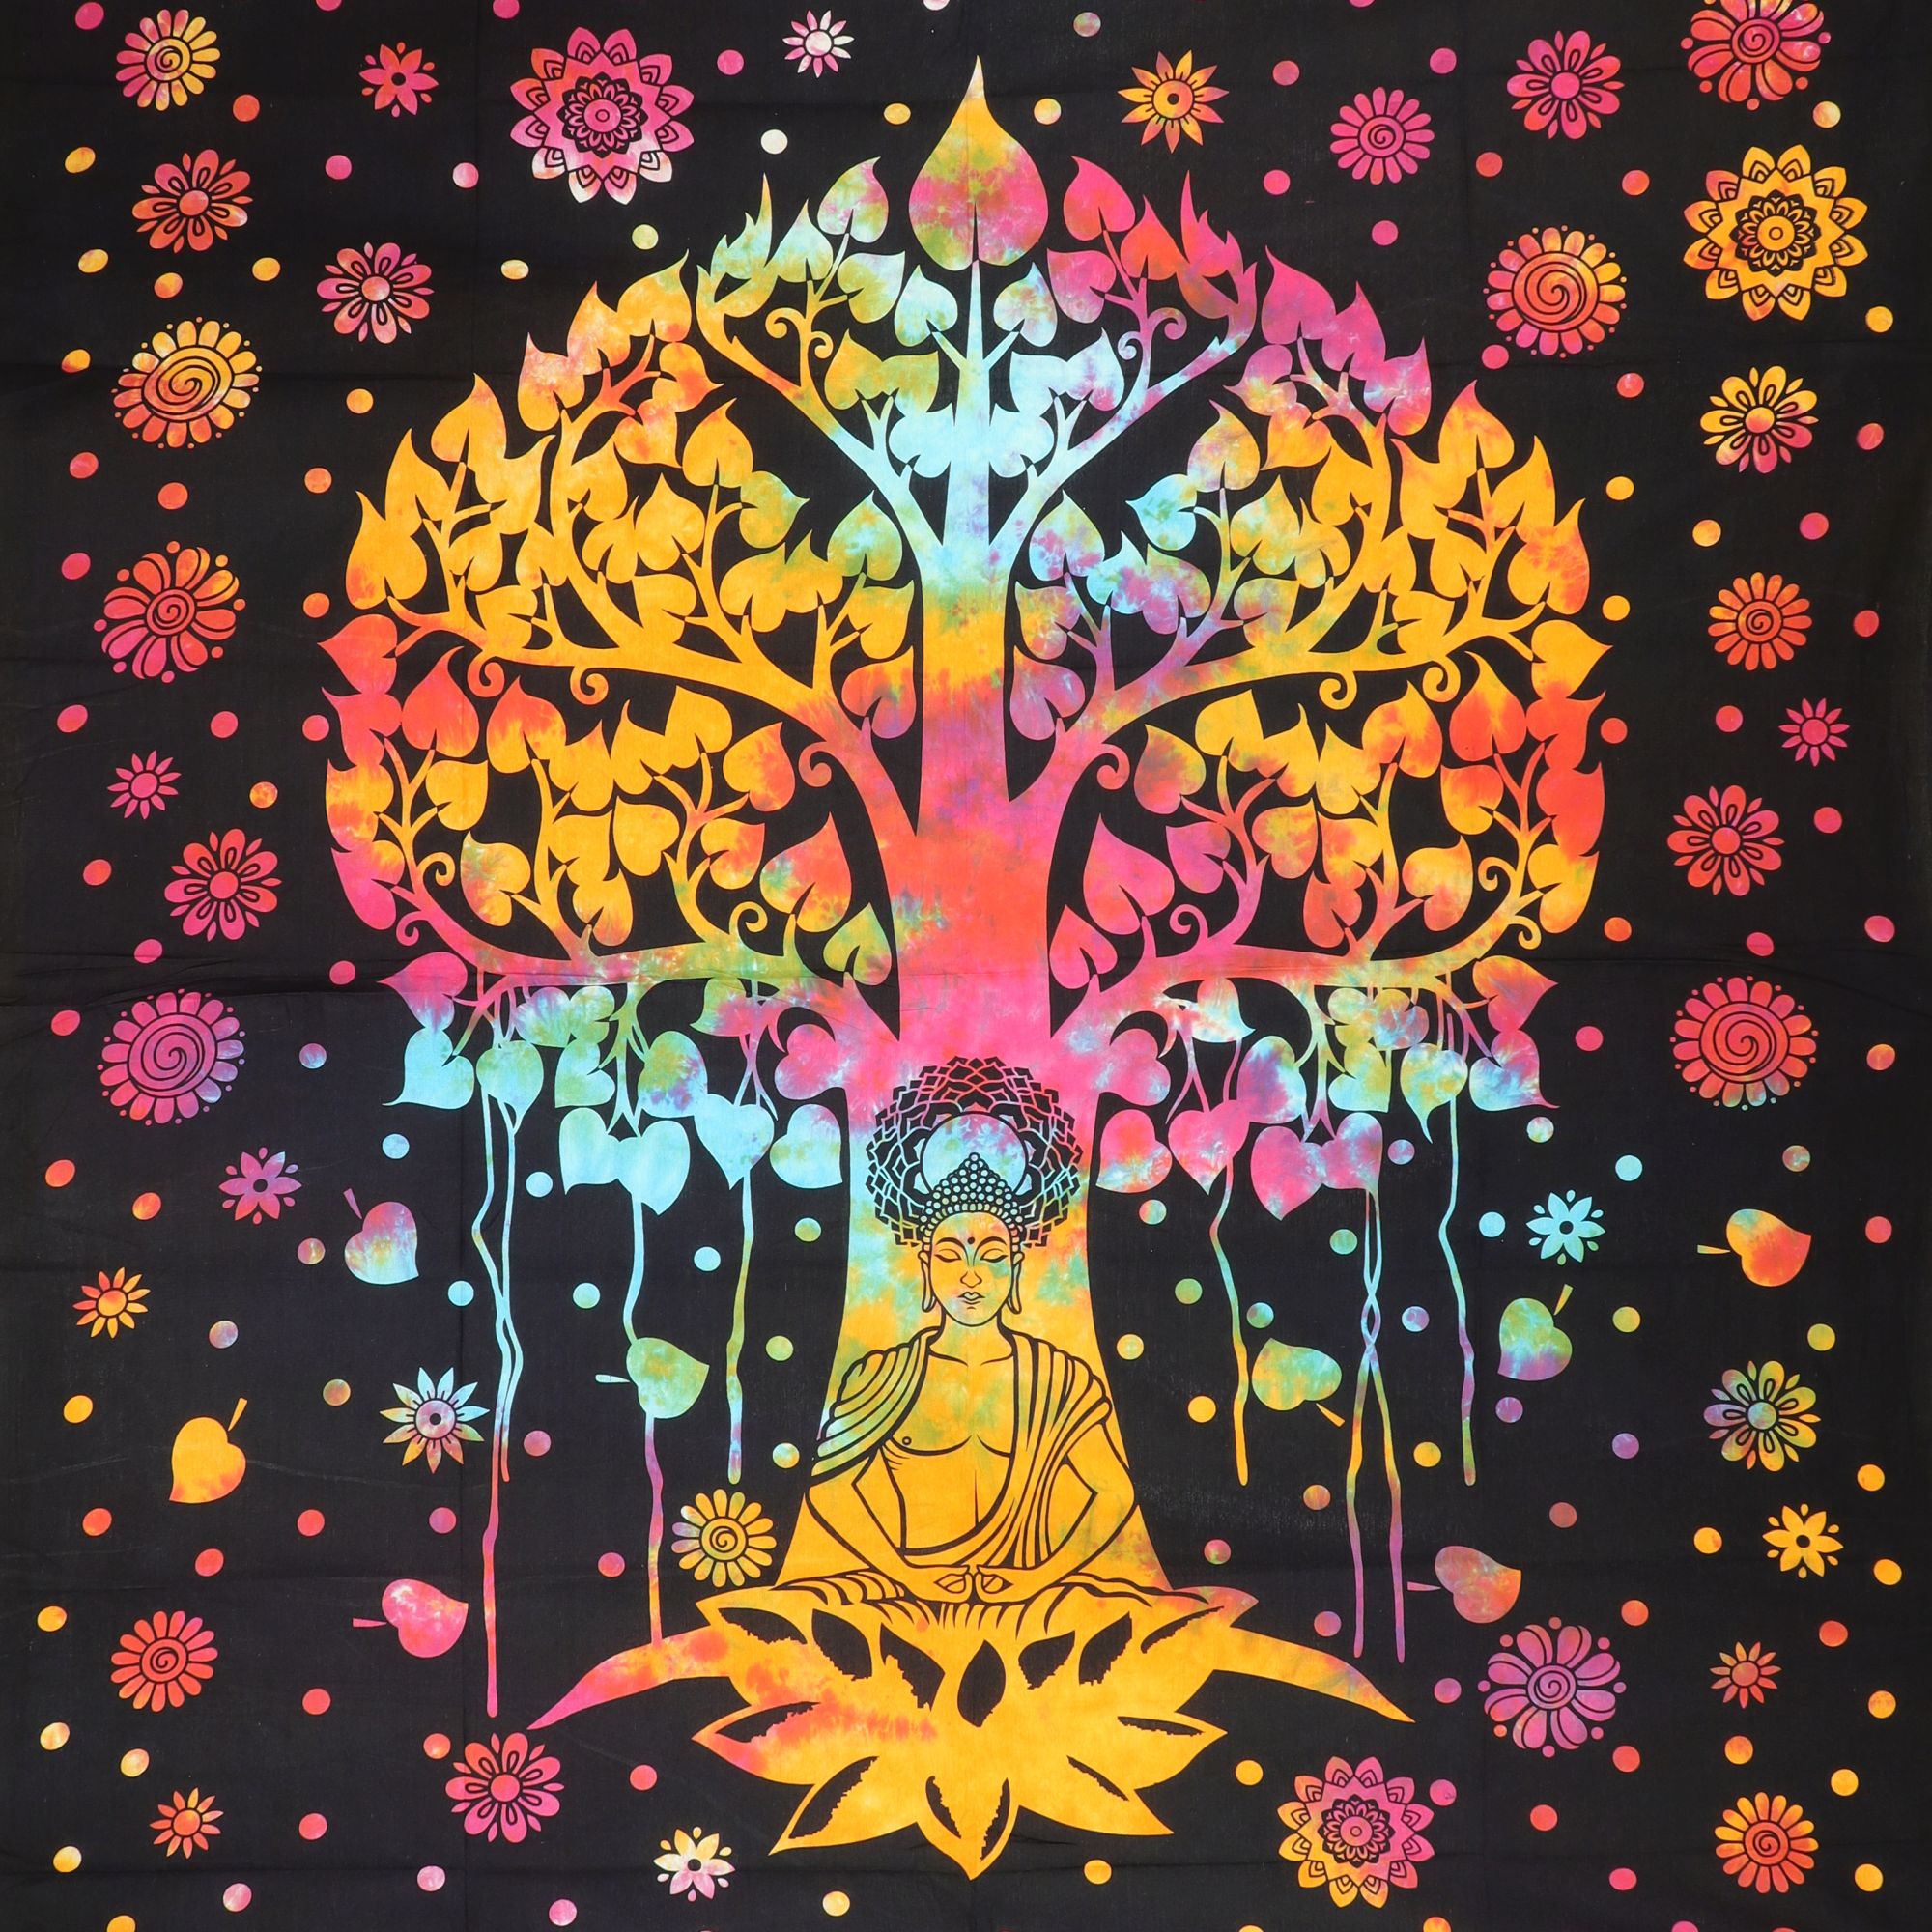 Wandtuch XXL 210x230 - Baum des Lebens und Buddha - 100% Baumwolle - detailreicher indischer Druck - mehrfarbig Batik - dekoratives Tuch, Wandbild, Tagesdecke, Bedcover, Vorhang, Picknick-Decke, Strandtuch